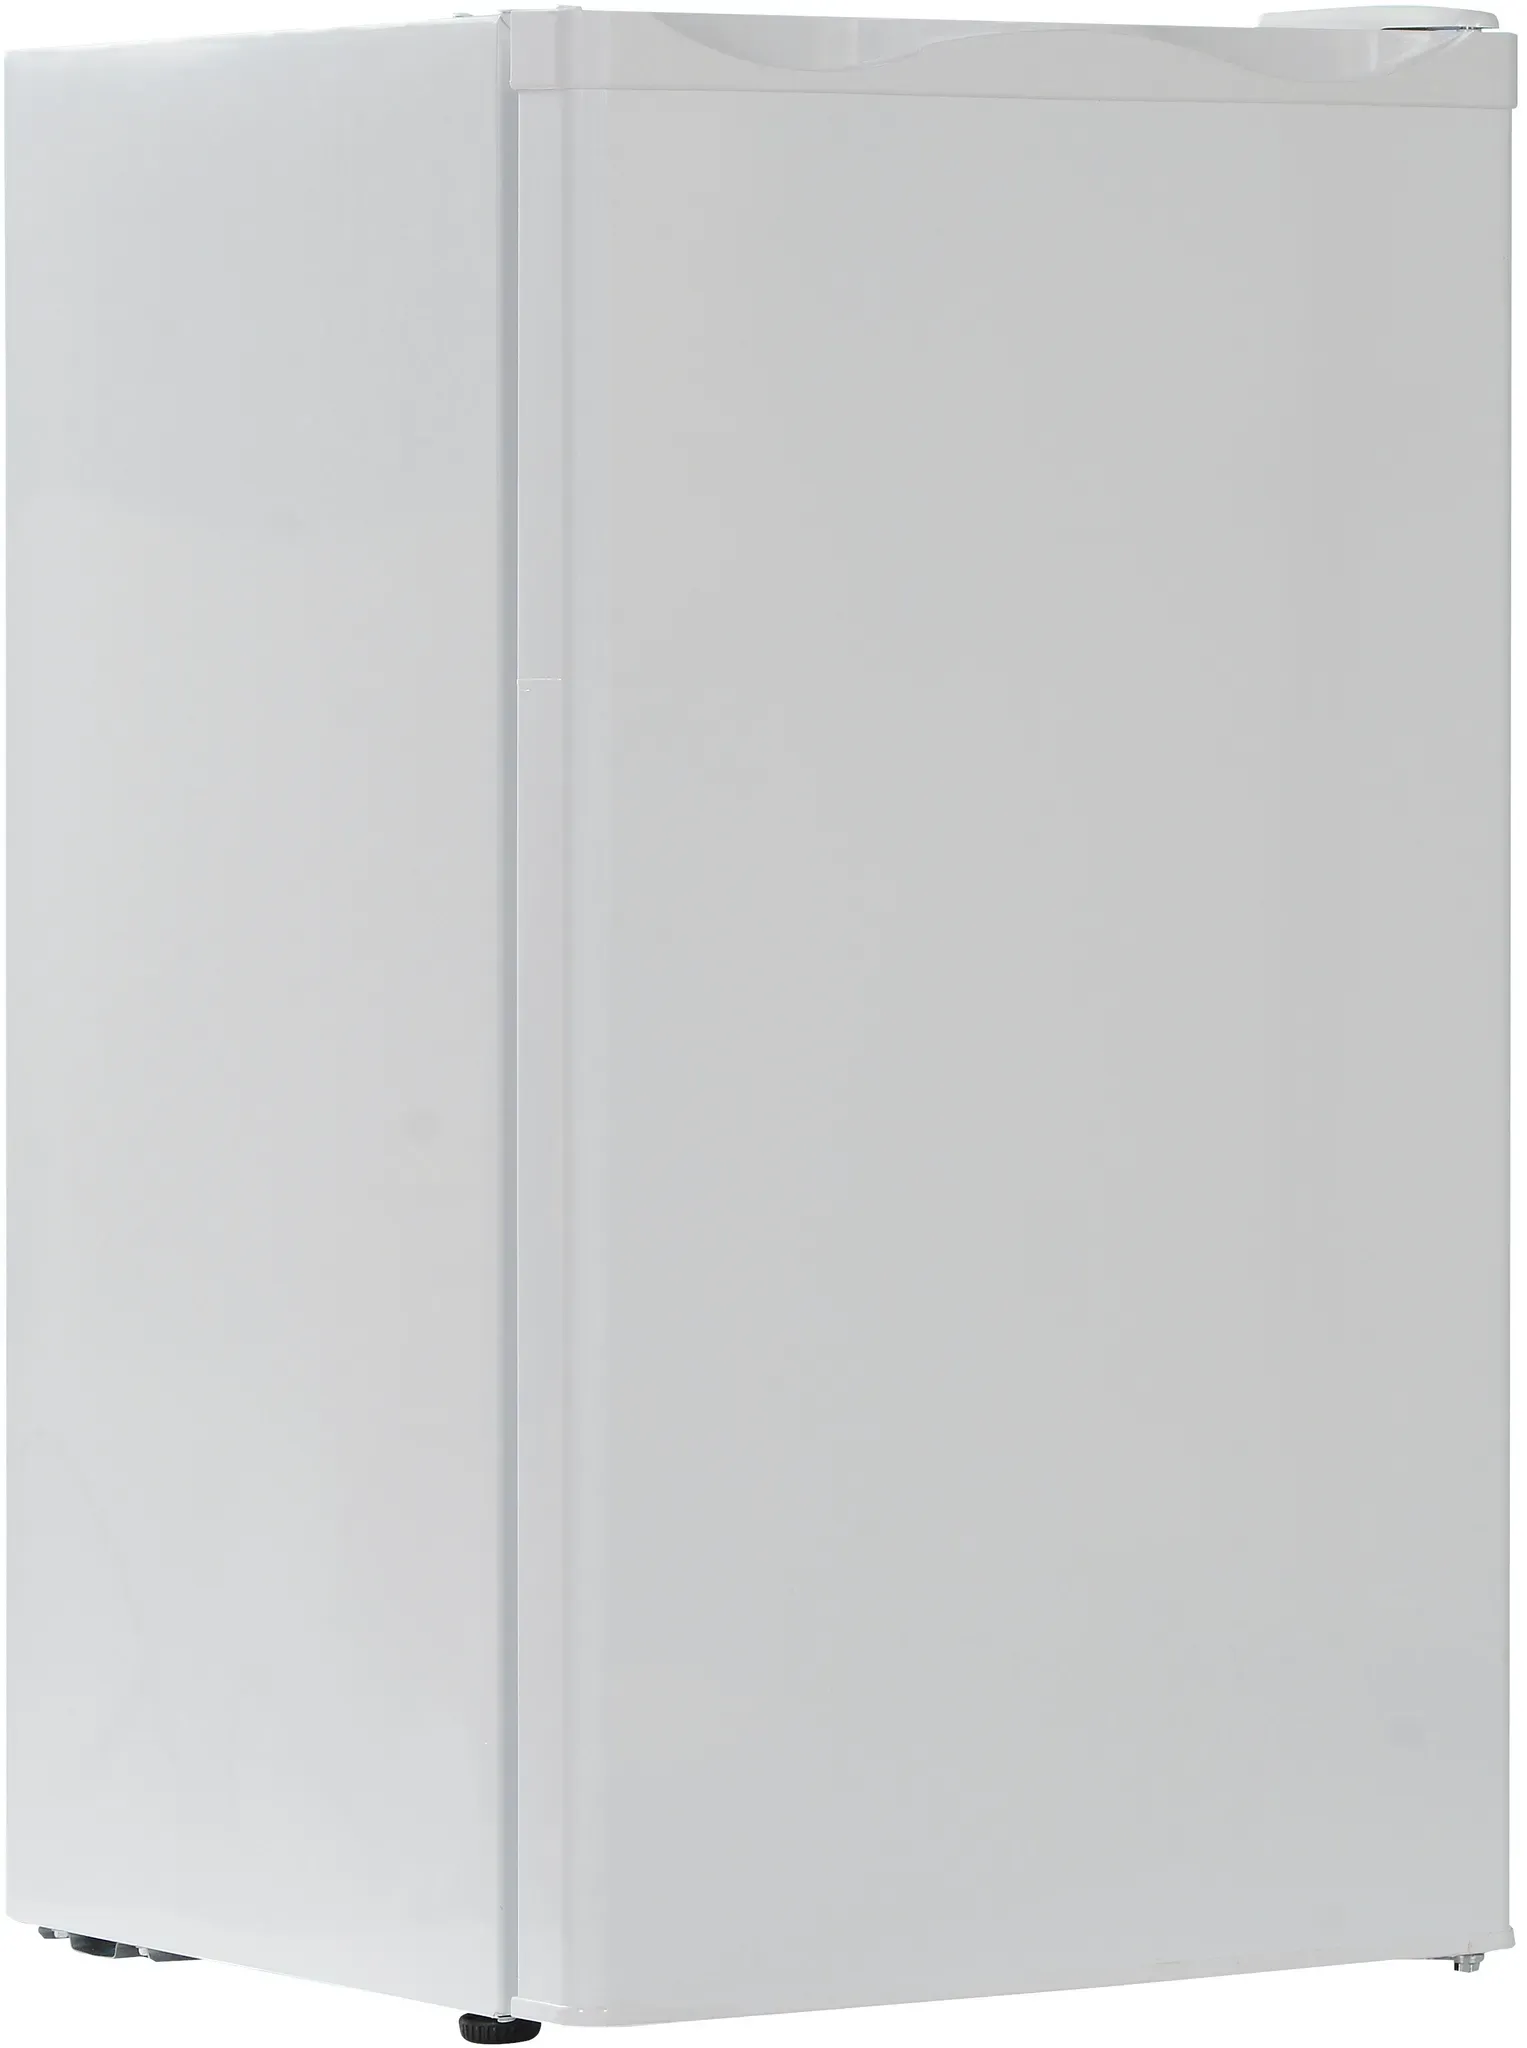 aro Tischkühlschrank TLW8650E, PCM, 48 x 49.5 x 84.5 cm, 91 L, mit Innenbeleuchtung, weiß